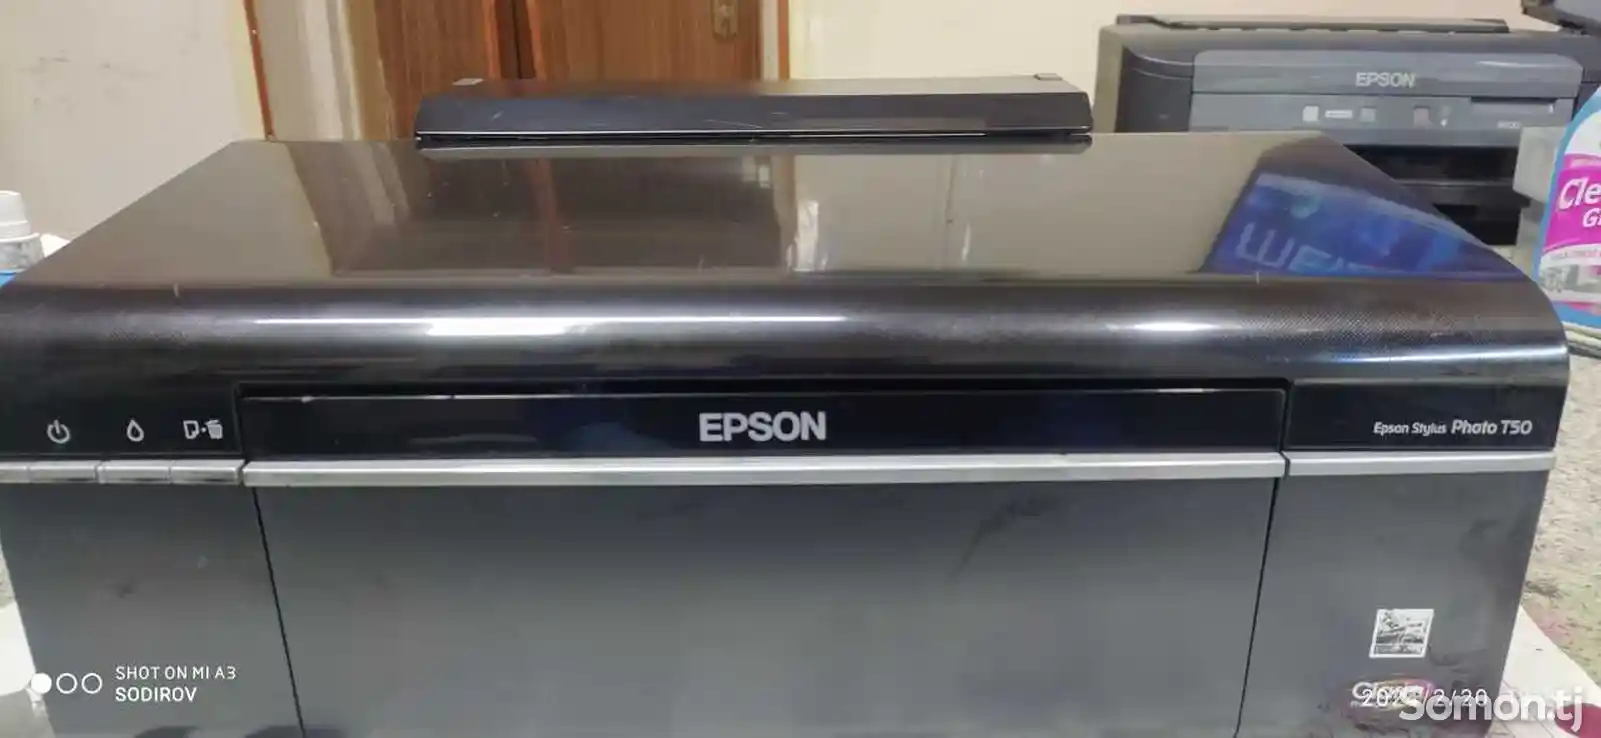 Принтер Цветной Epson T50-2